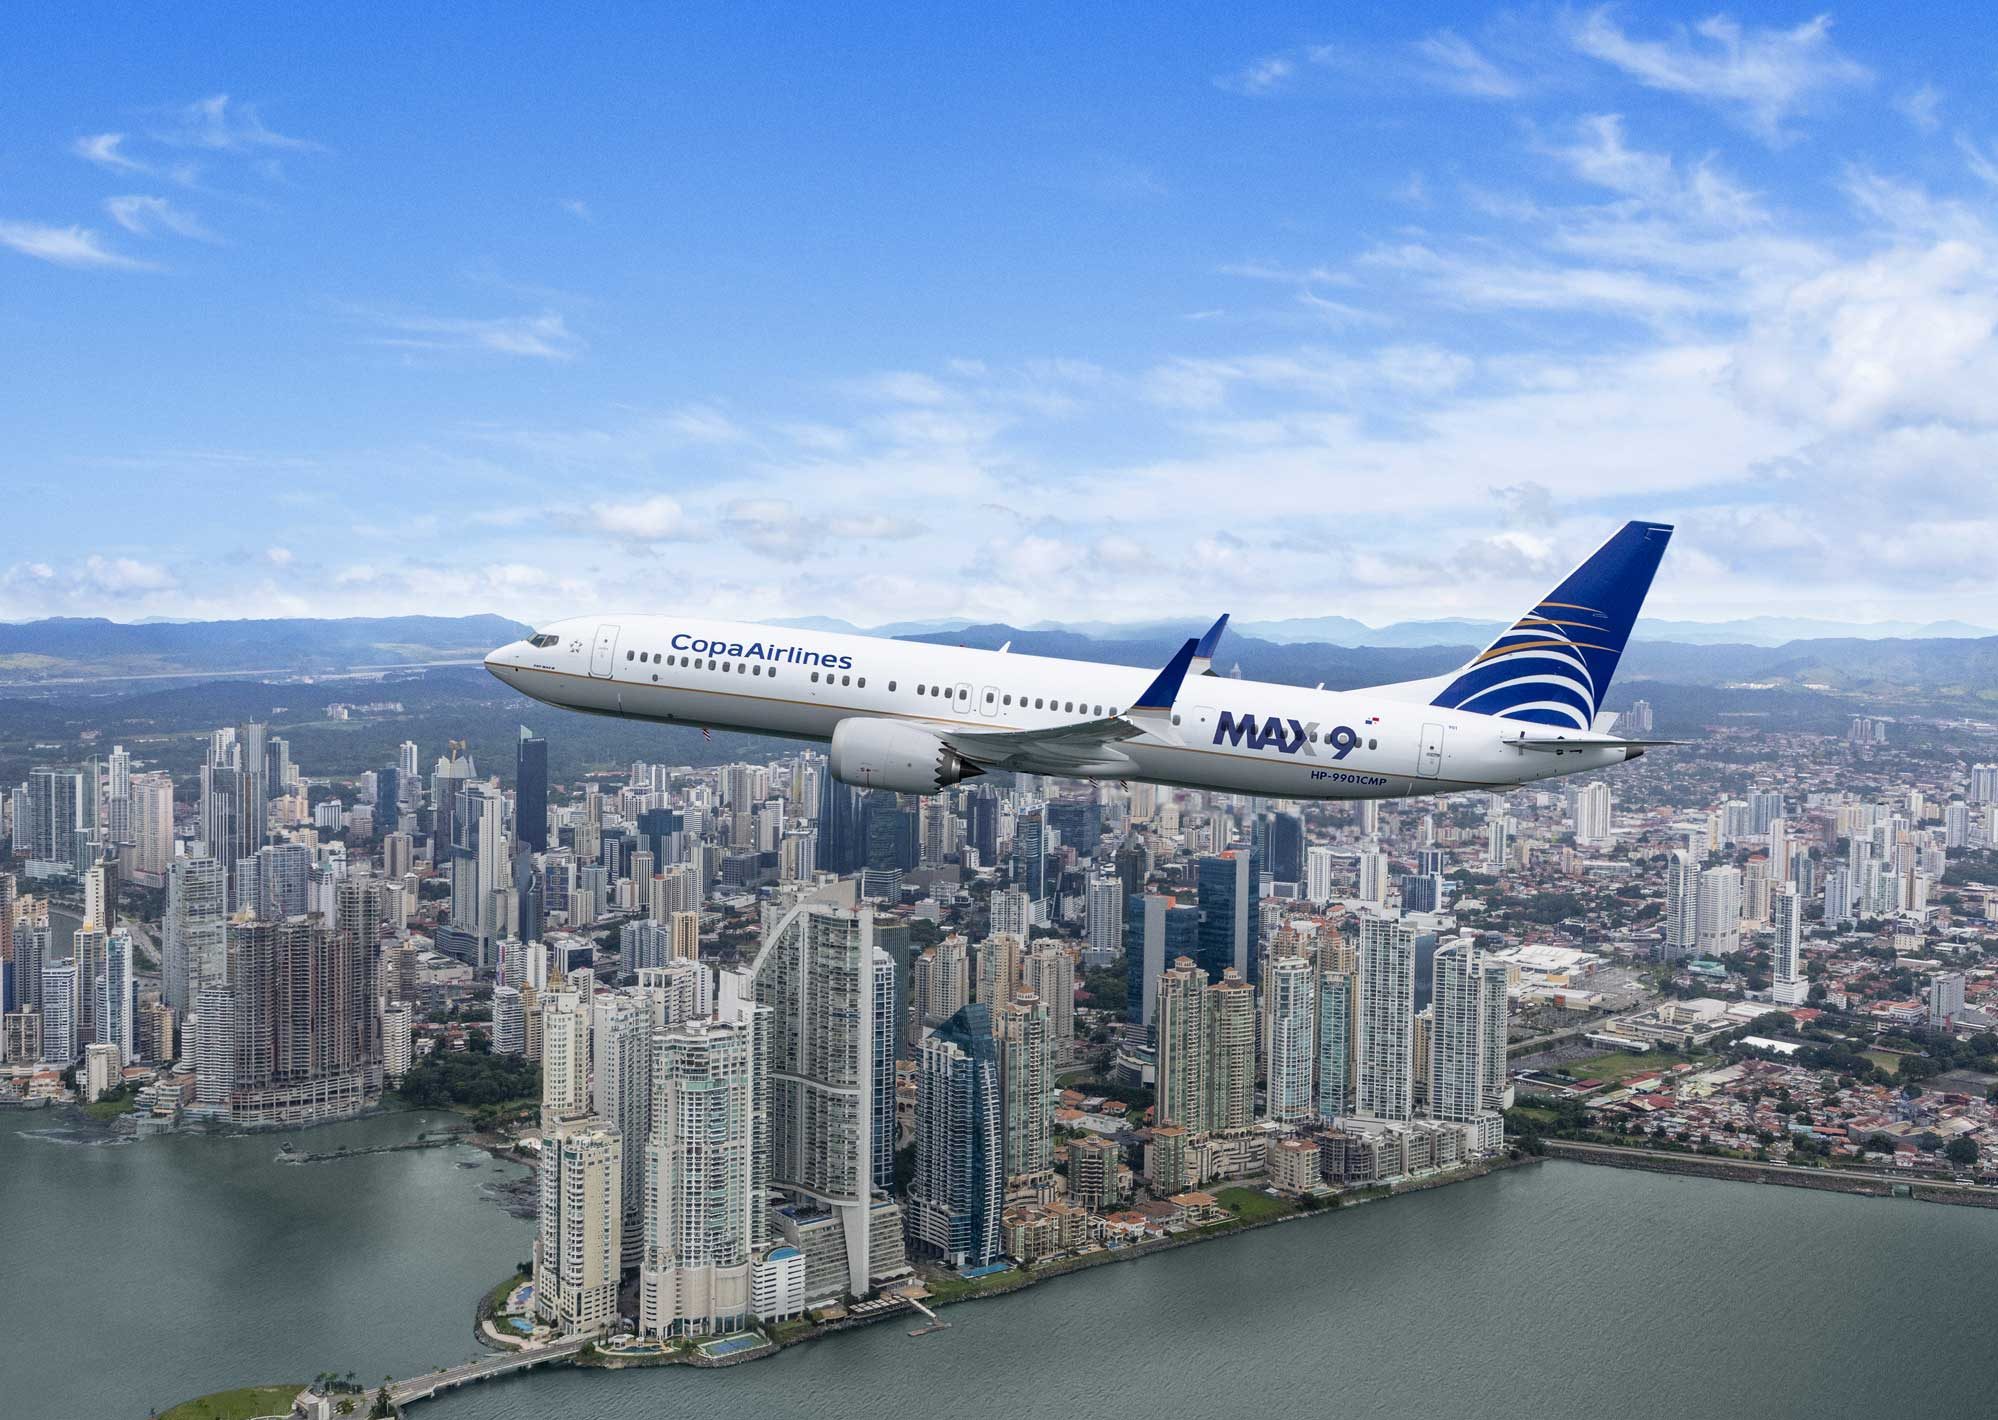 Copa Airlines se suma a iniciativas para la reactivación del turismo en Panamá